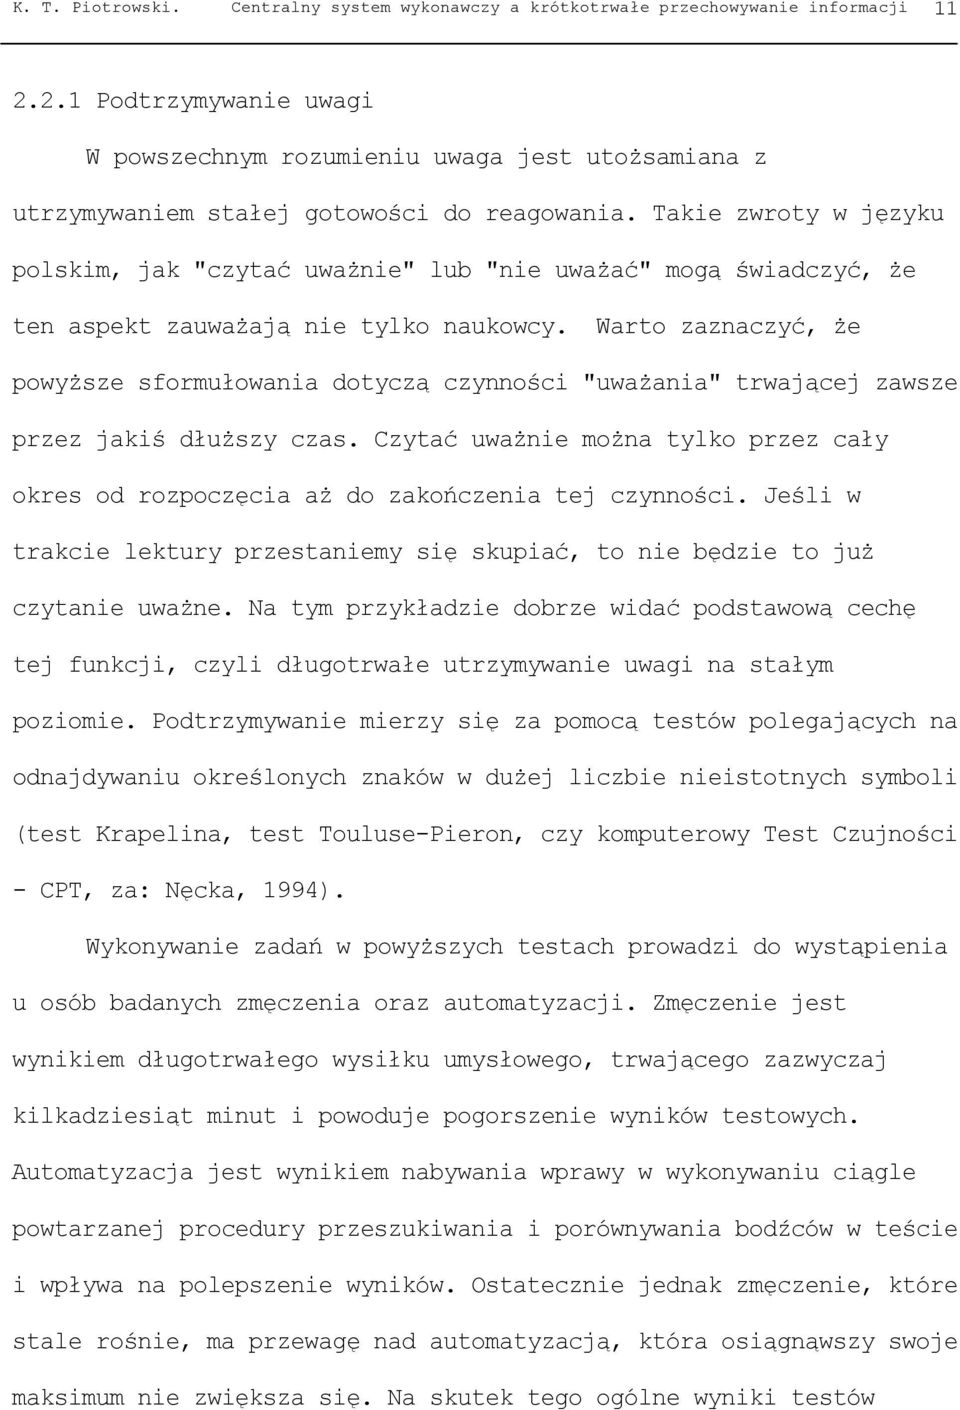 Takie zwroty w języku polskim, jak "czytać uważnie" lub "nie uważać" mogą świadczyć, że ten aspekt zauważają nie tylko naukowcy.